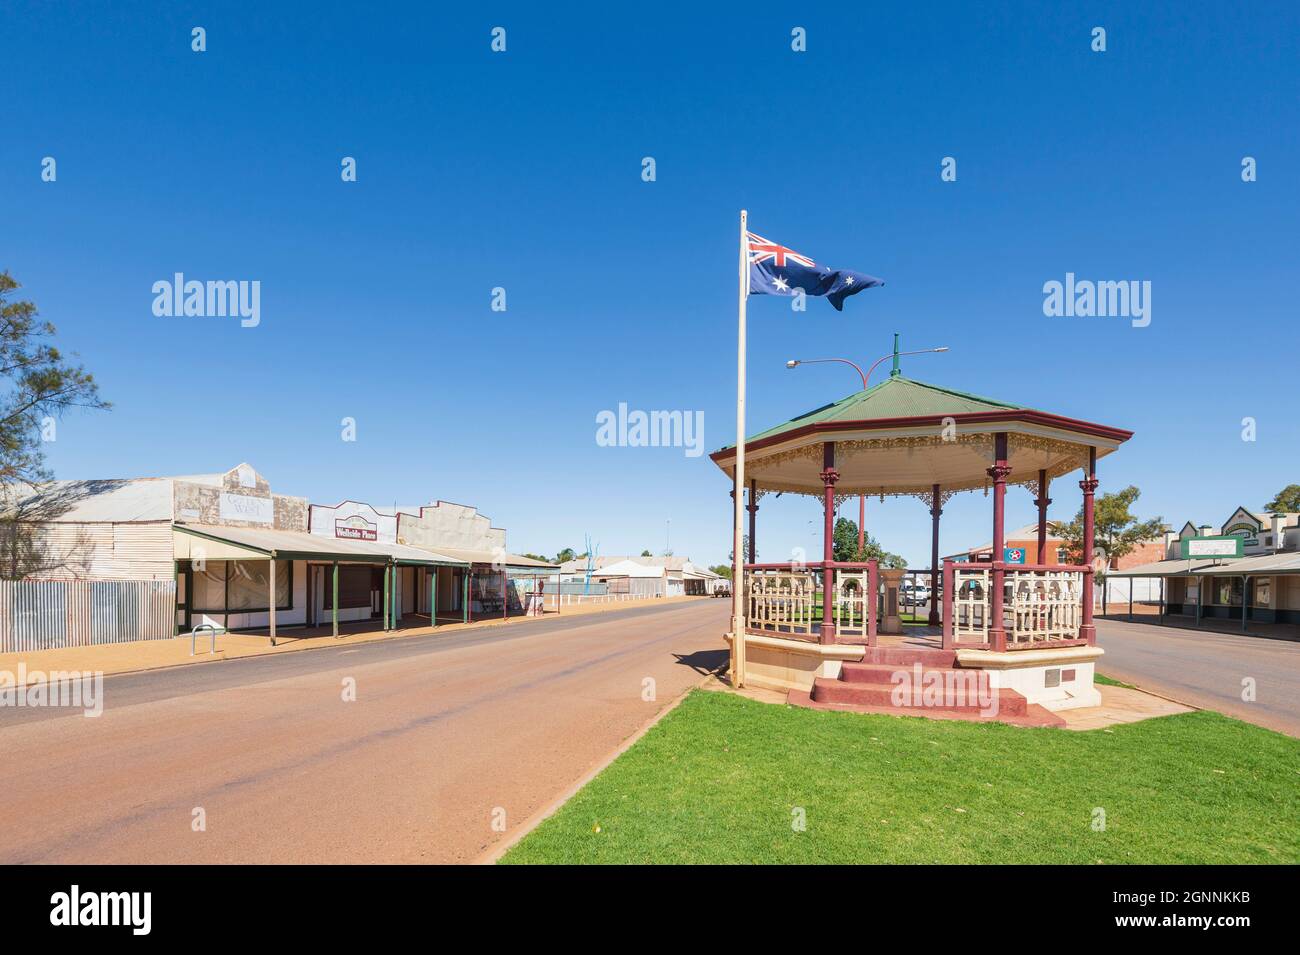 Blick auf die Rotunde und die alten Geschäfte in der Austin Street, in der kleinen ländlichen Stadt Cue, Murchison Region, Western Australia, Australien Stockfoto